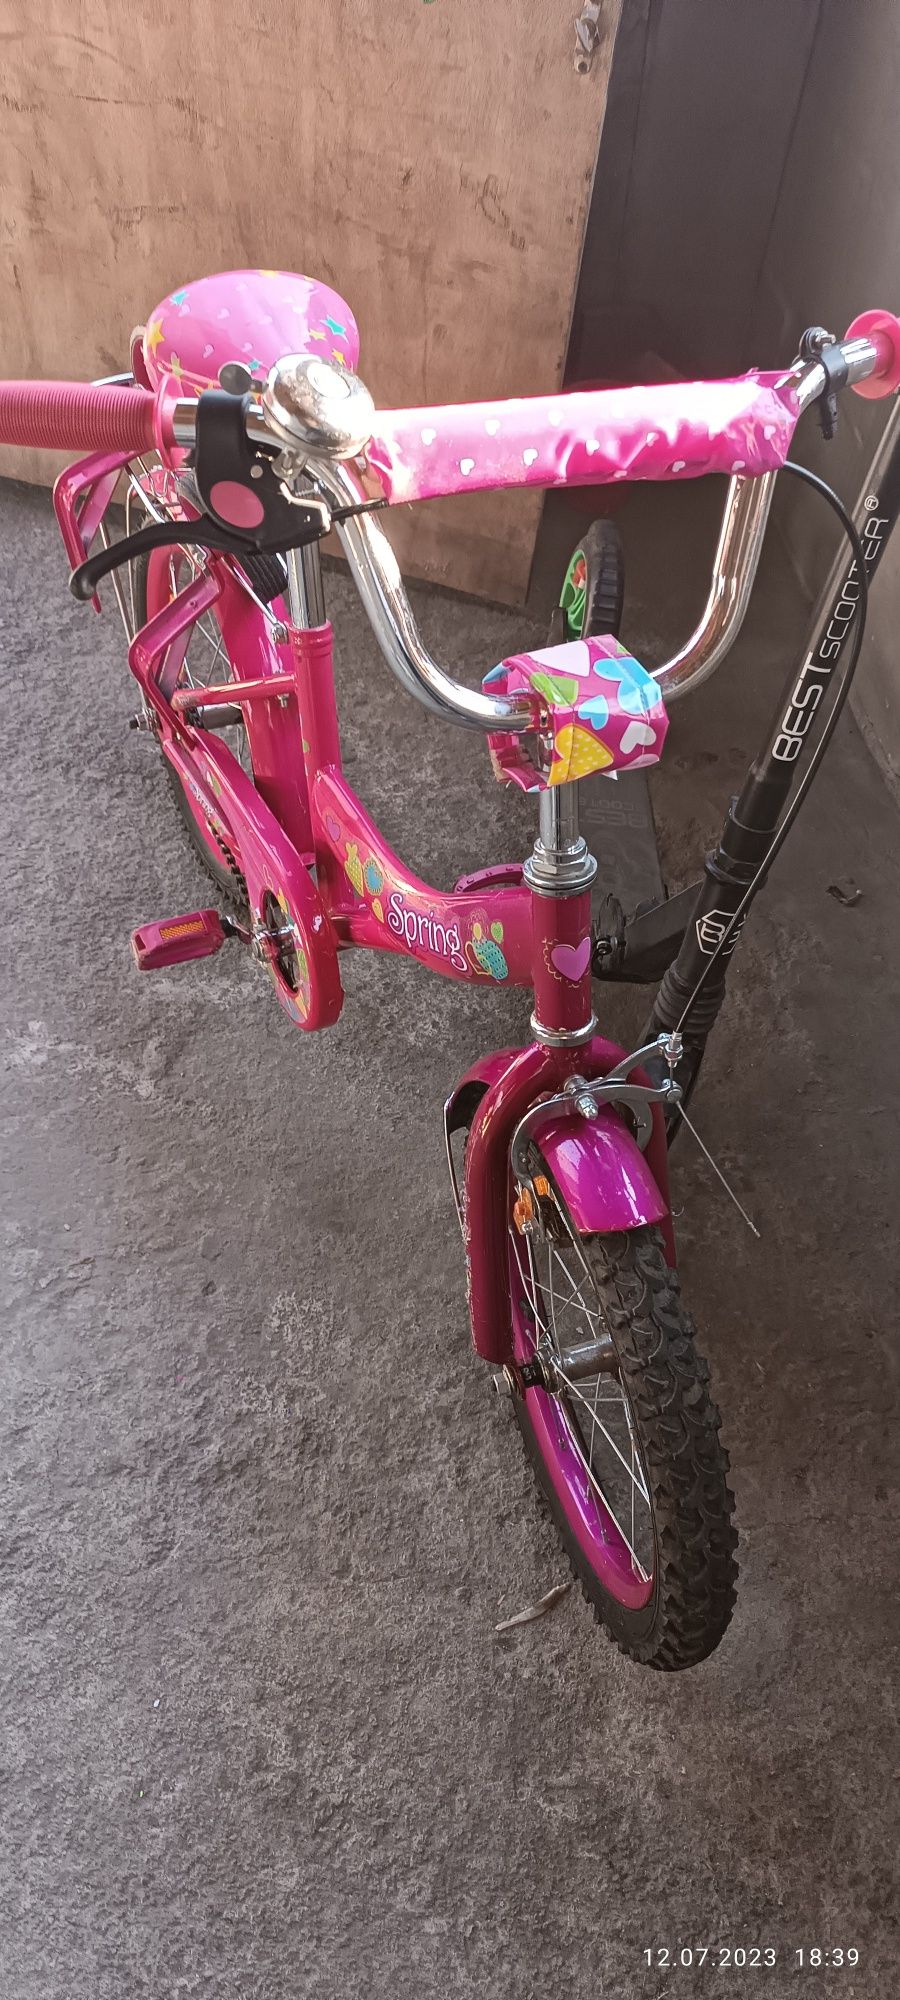 Детский велосипед,  16дюймов колеса

18 дюймов коле